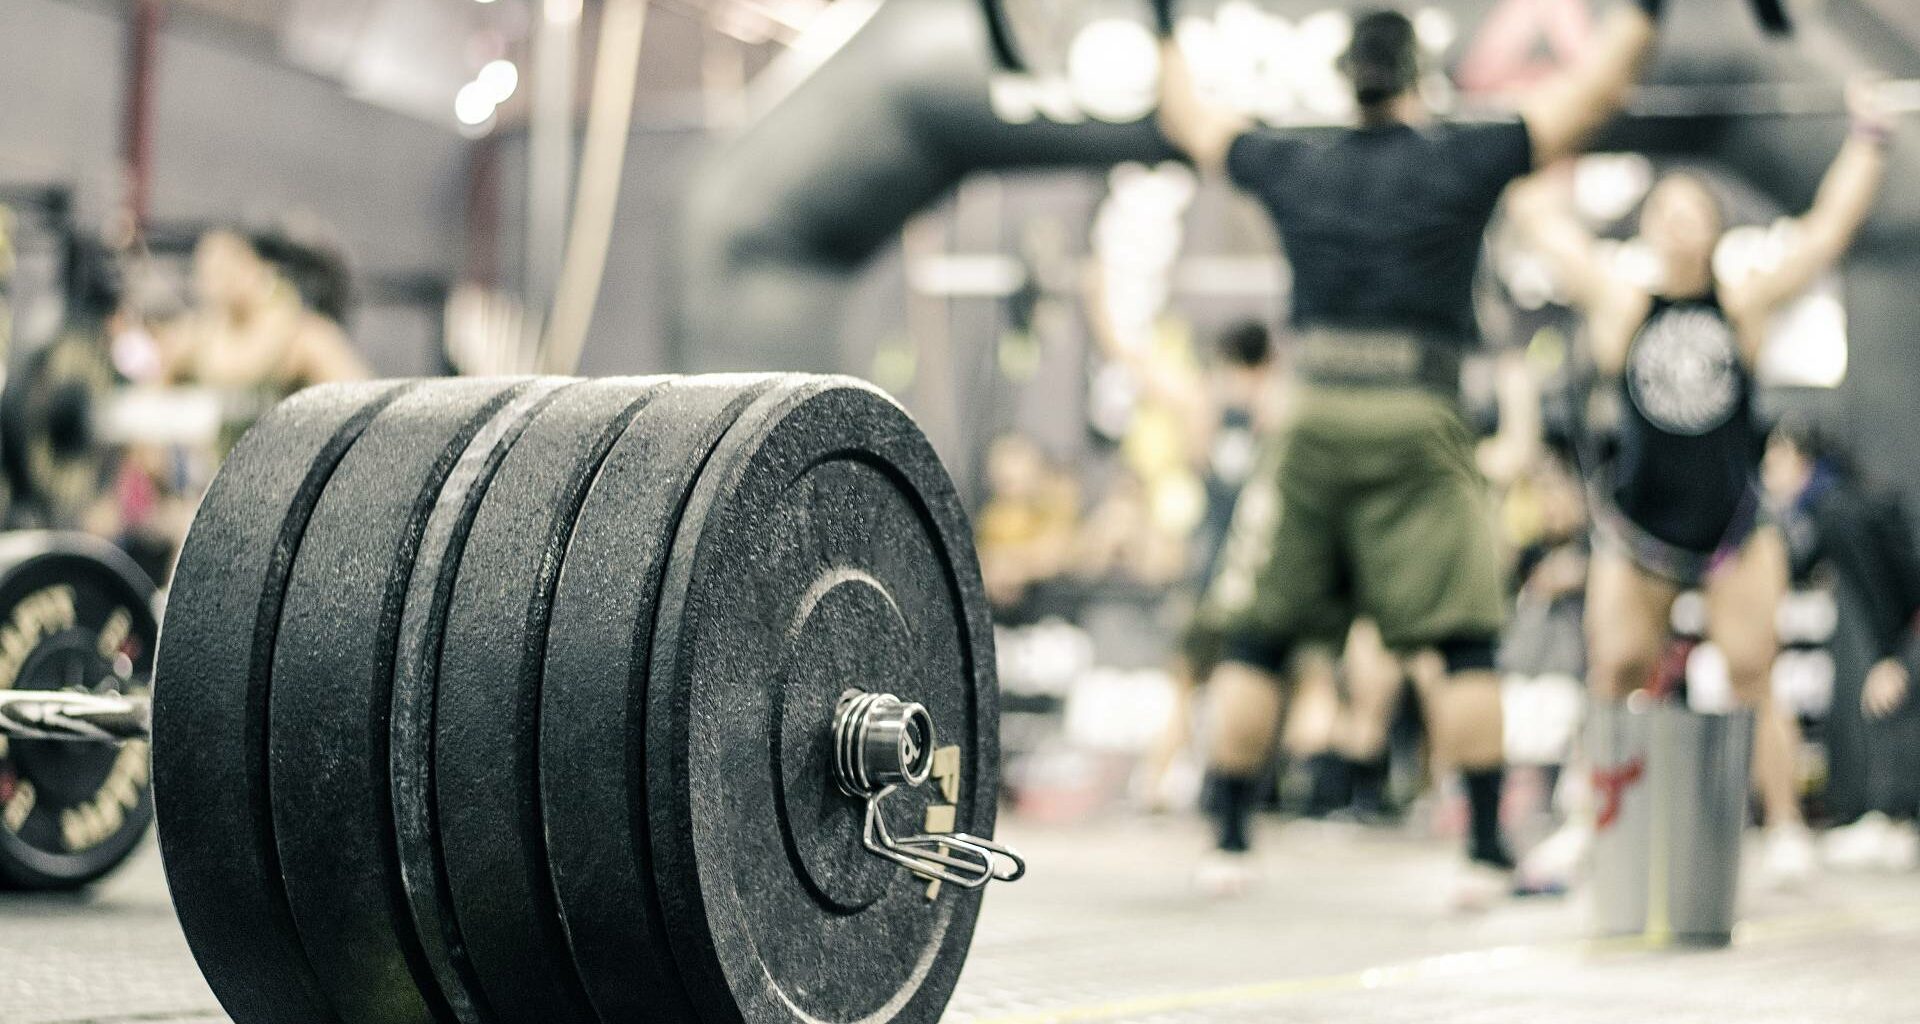 Höhere Trainingsfrequenz bei trainierten Individuen: Größeres Volumen führt zu besserem Muskelwachstum?